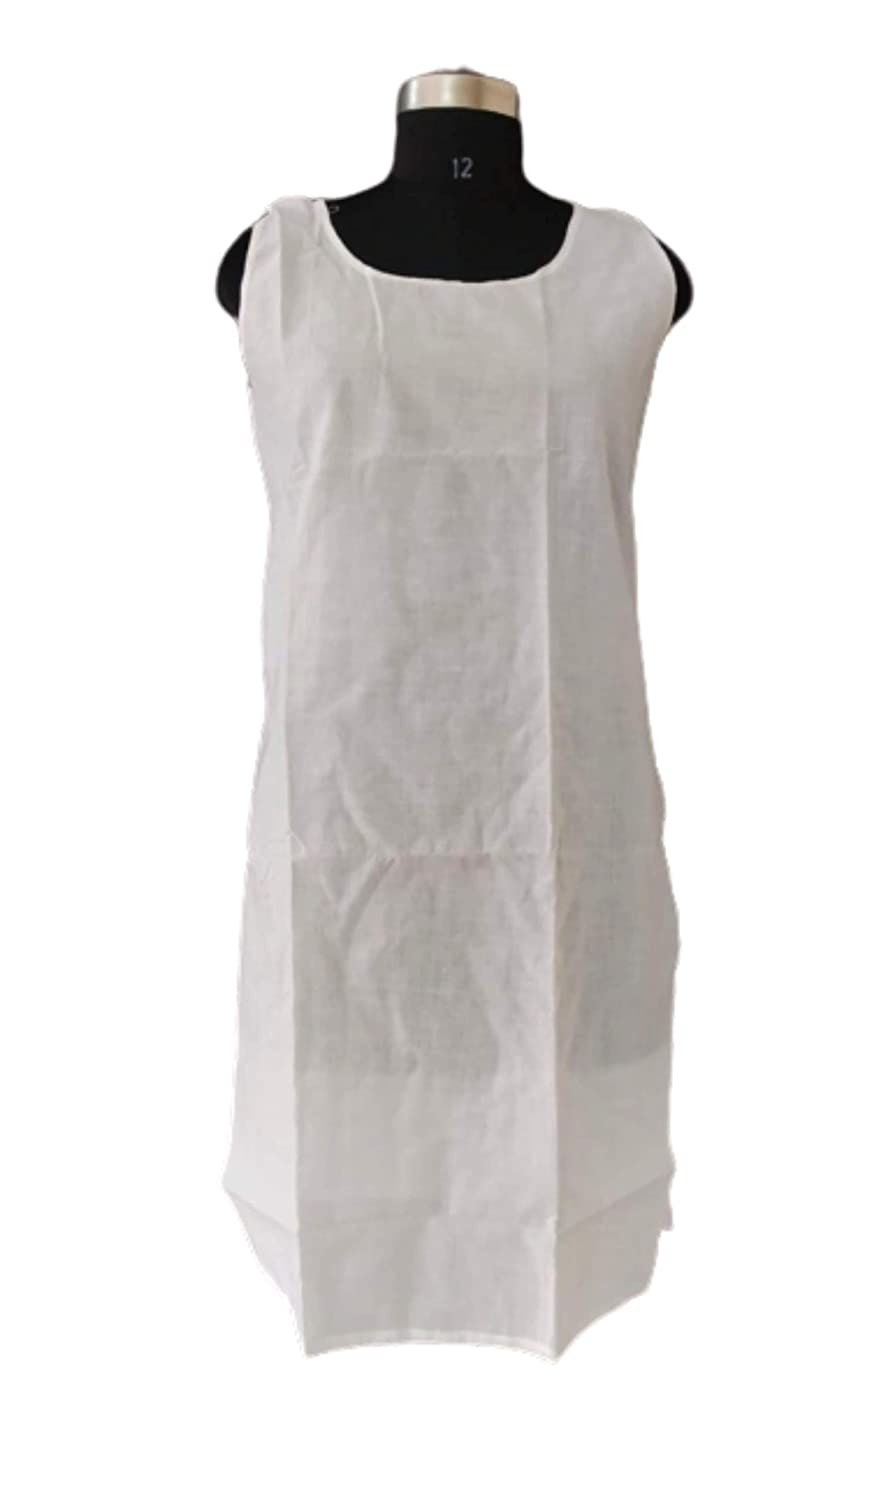 Buy Crala Women Cotton Long Length Bra Slips for Nighty/Kurtis- Sleeveless  Type - Set of 2 (Baby Pink & Brown) at Amazon.in